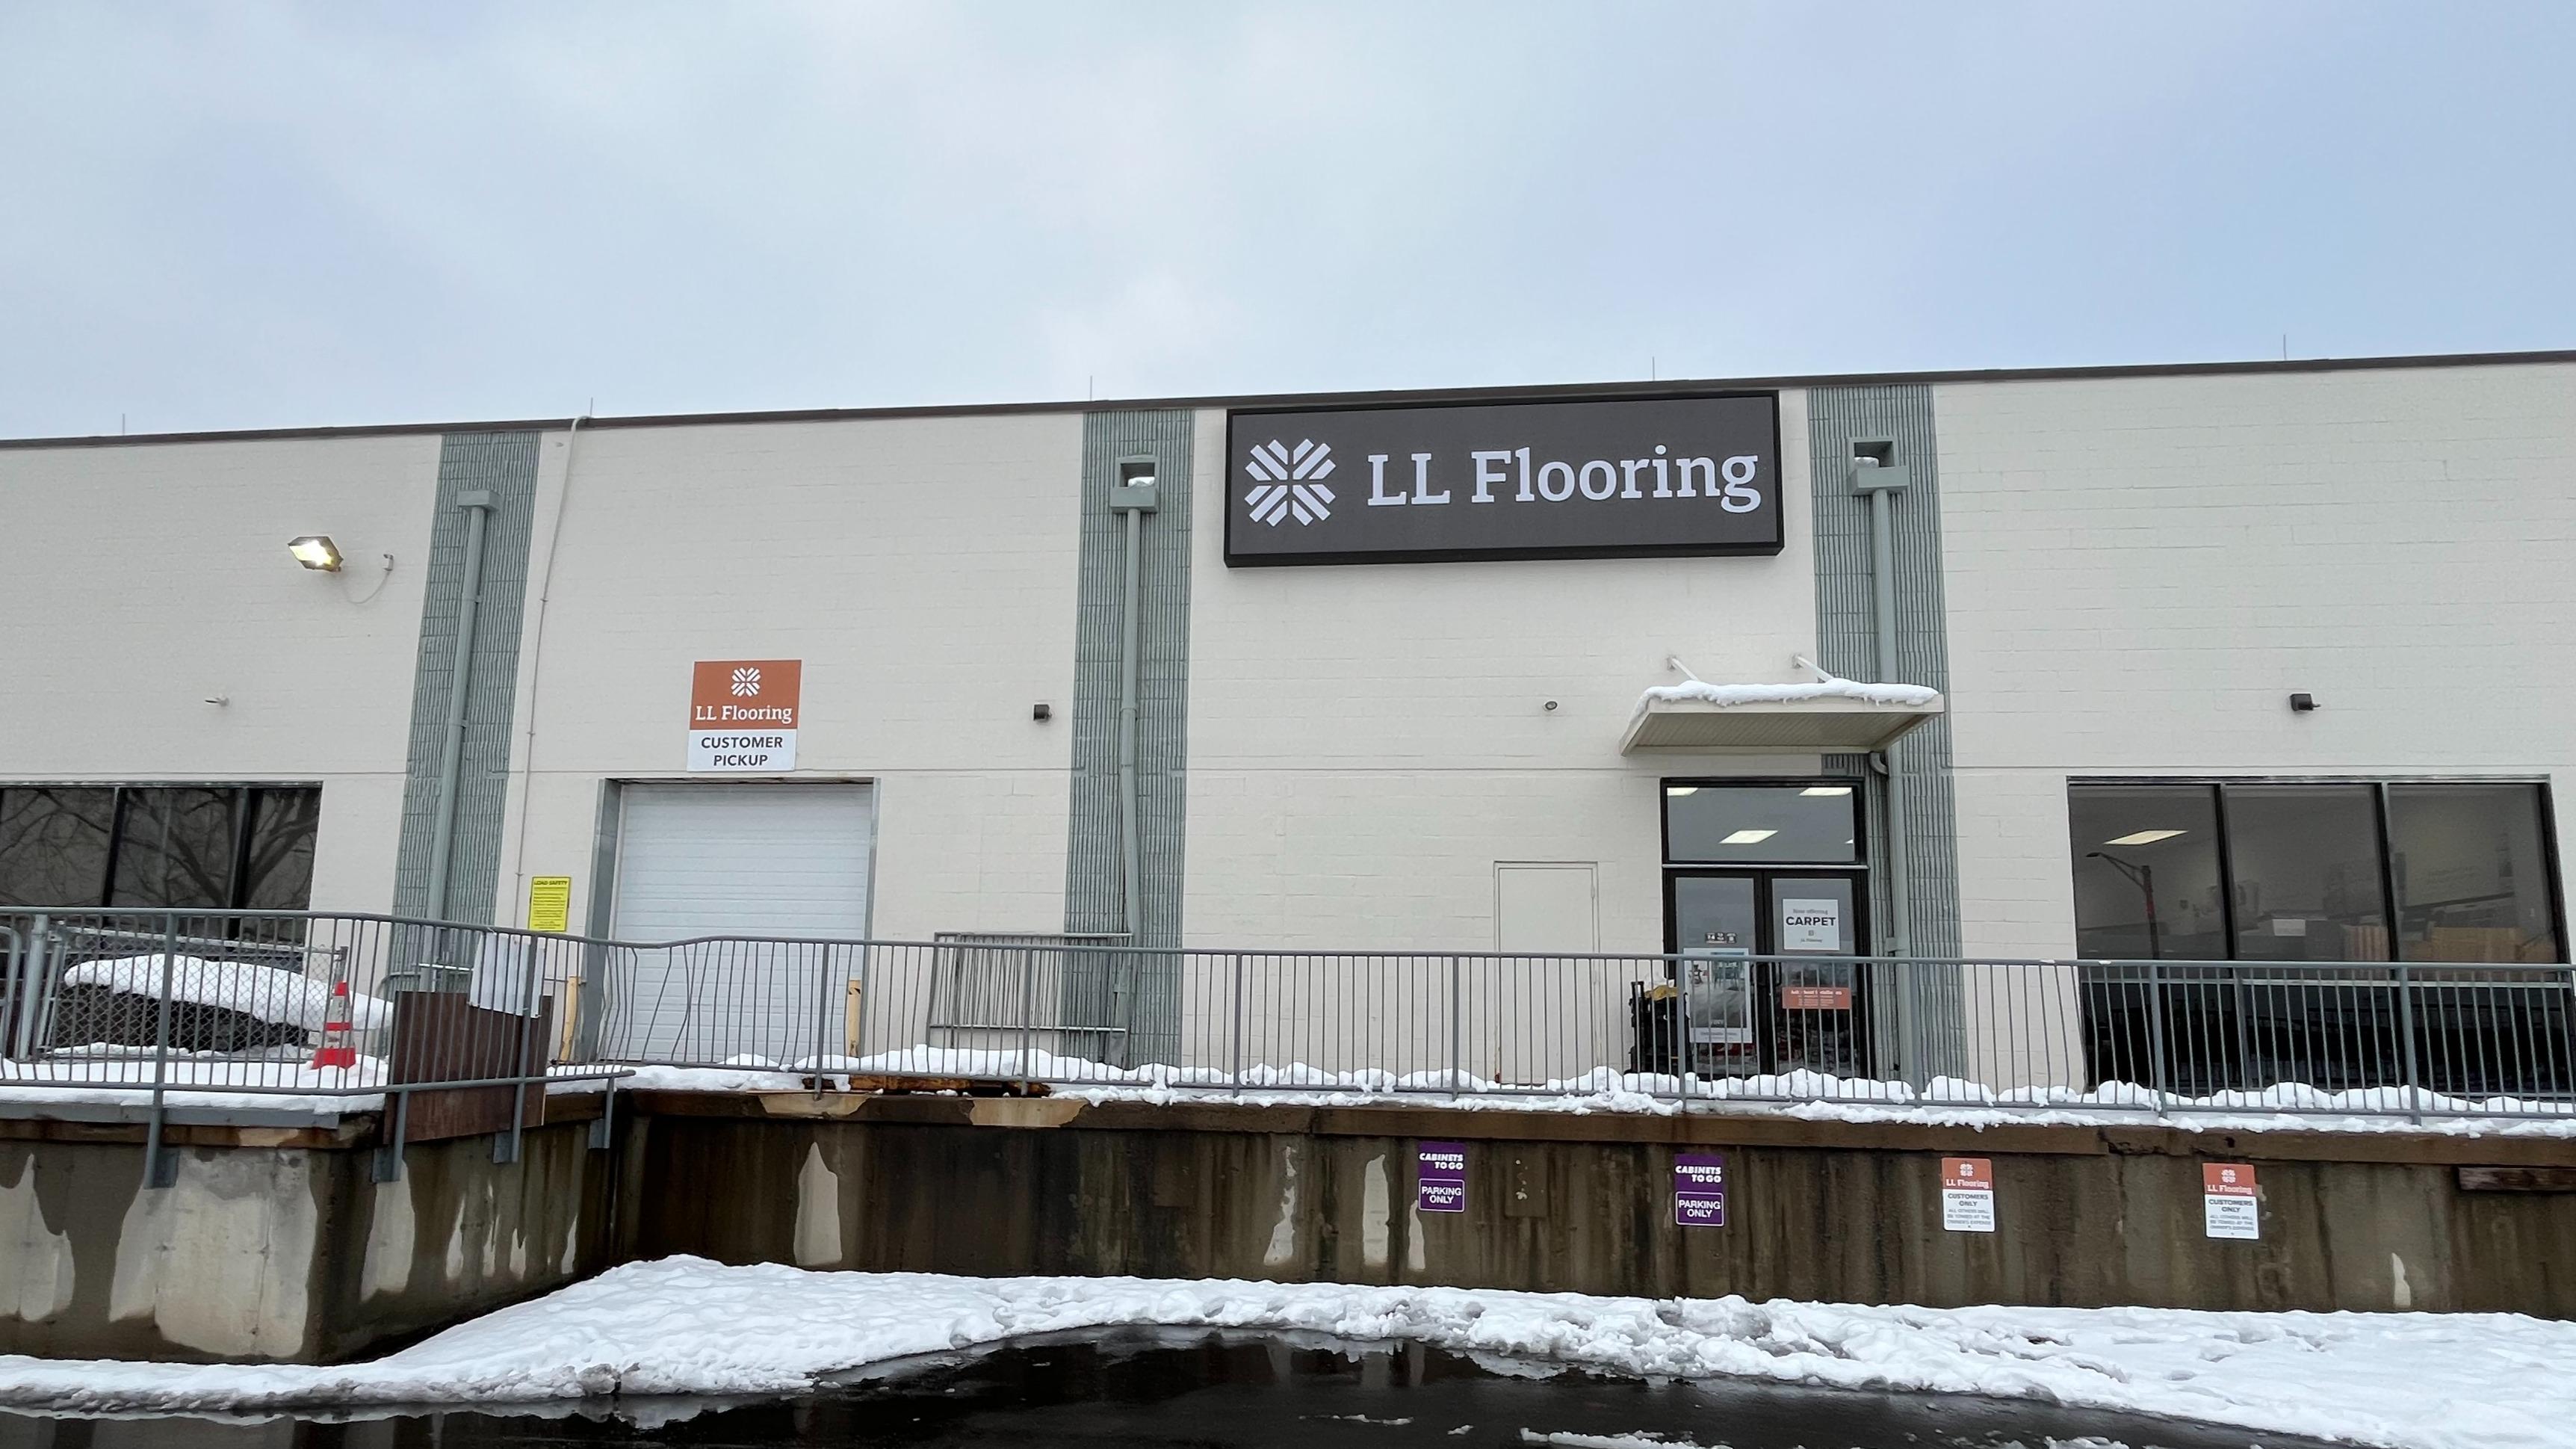 LL Flooring #1002 Hartford | 121 Brainard Road | Storefront